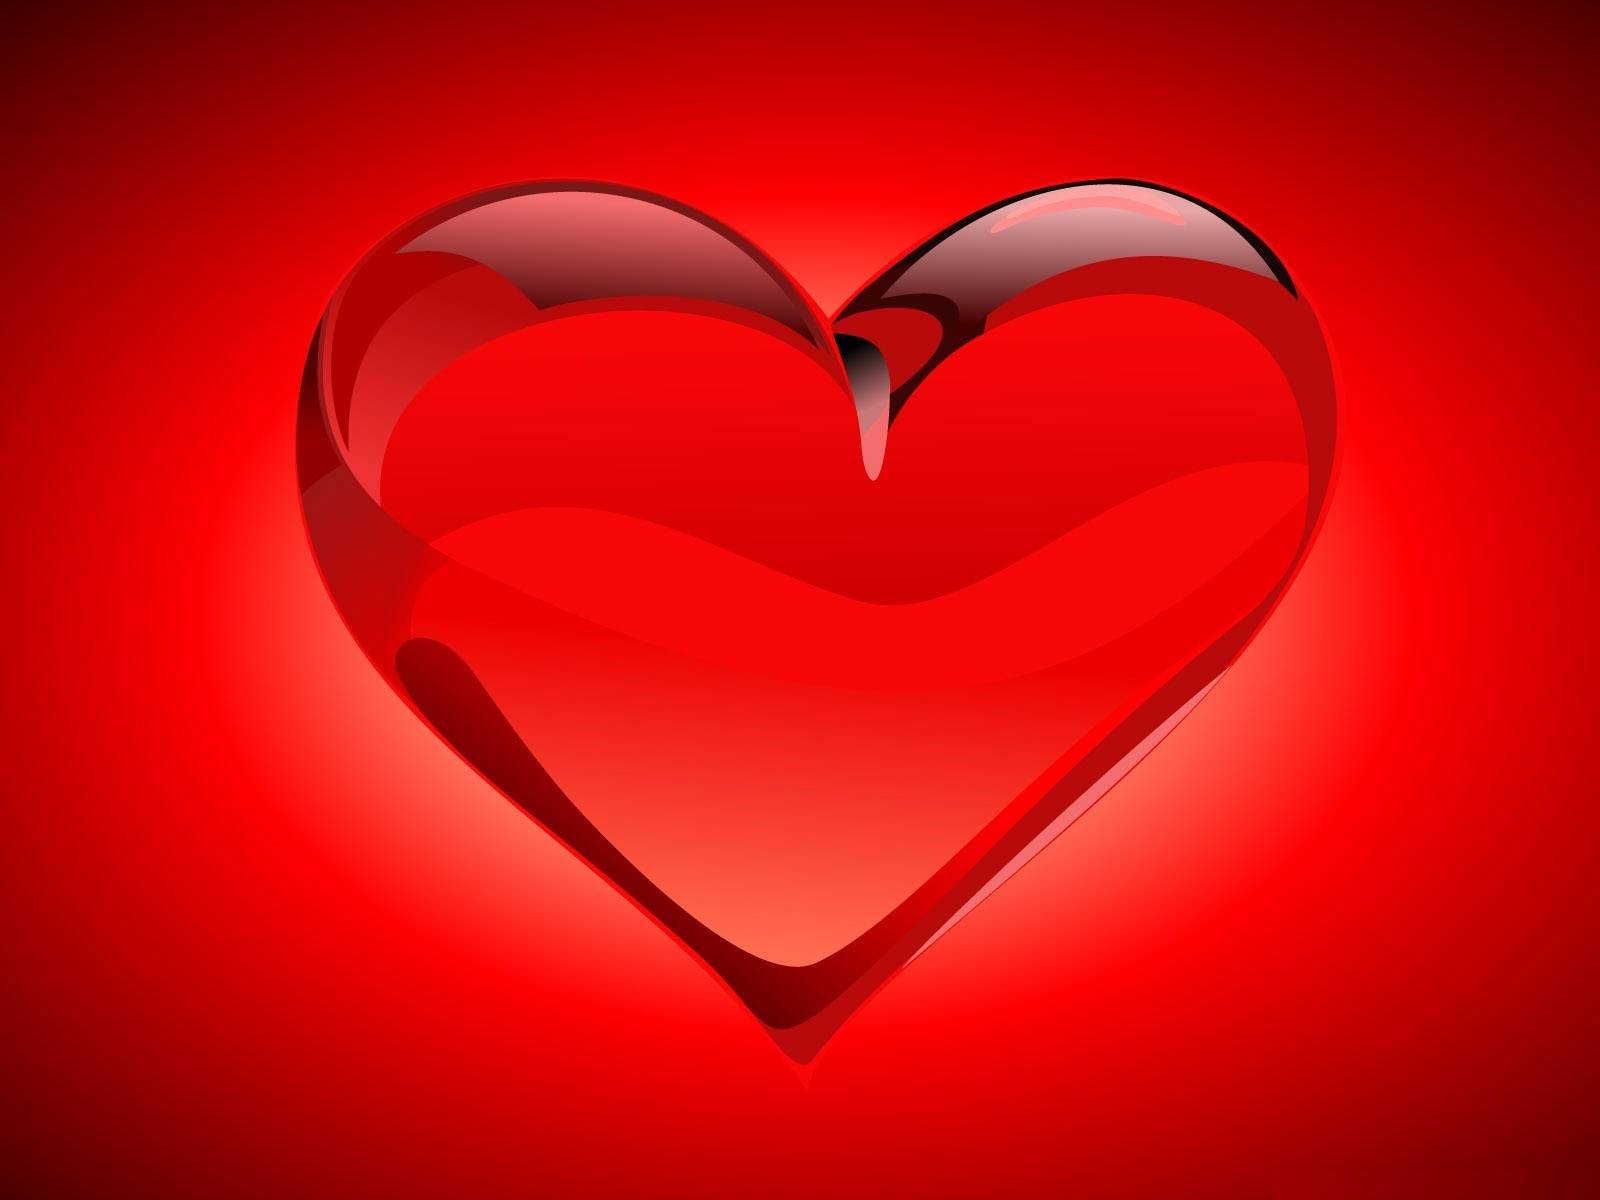 Heart For Love Wallpaper